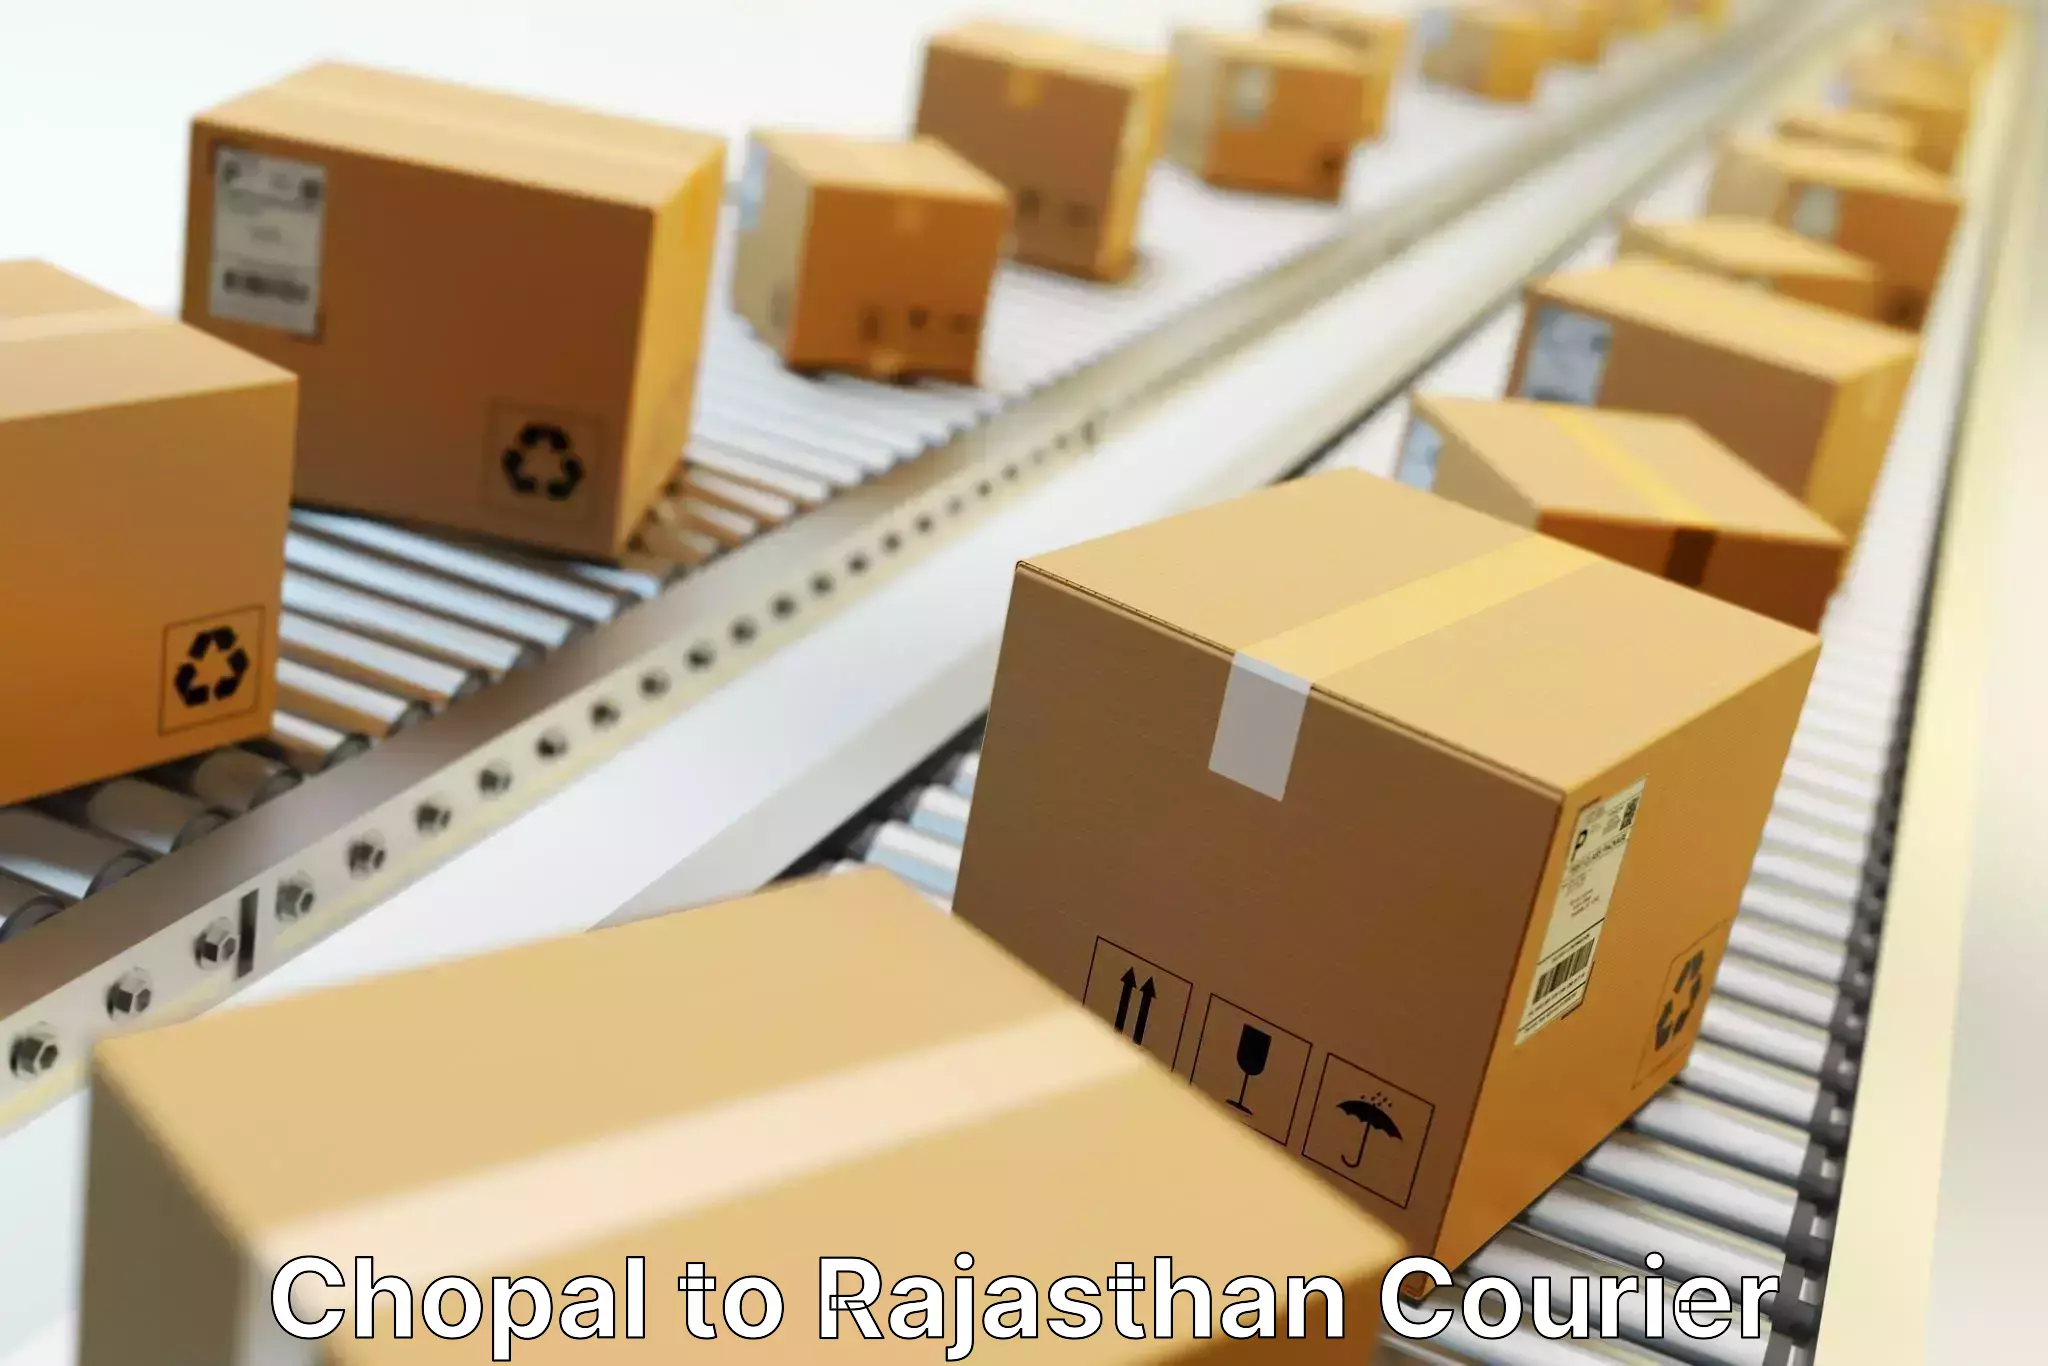 State-of-the-art courier technology Chopal to Jhunjhunu